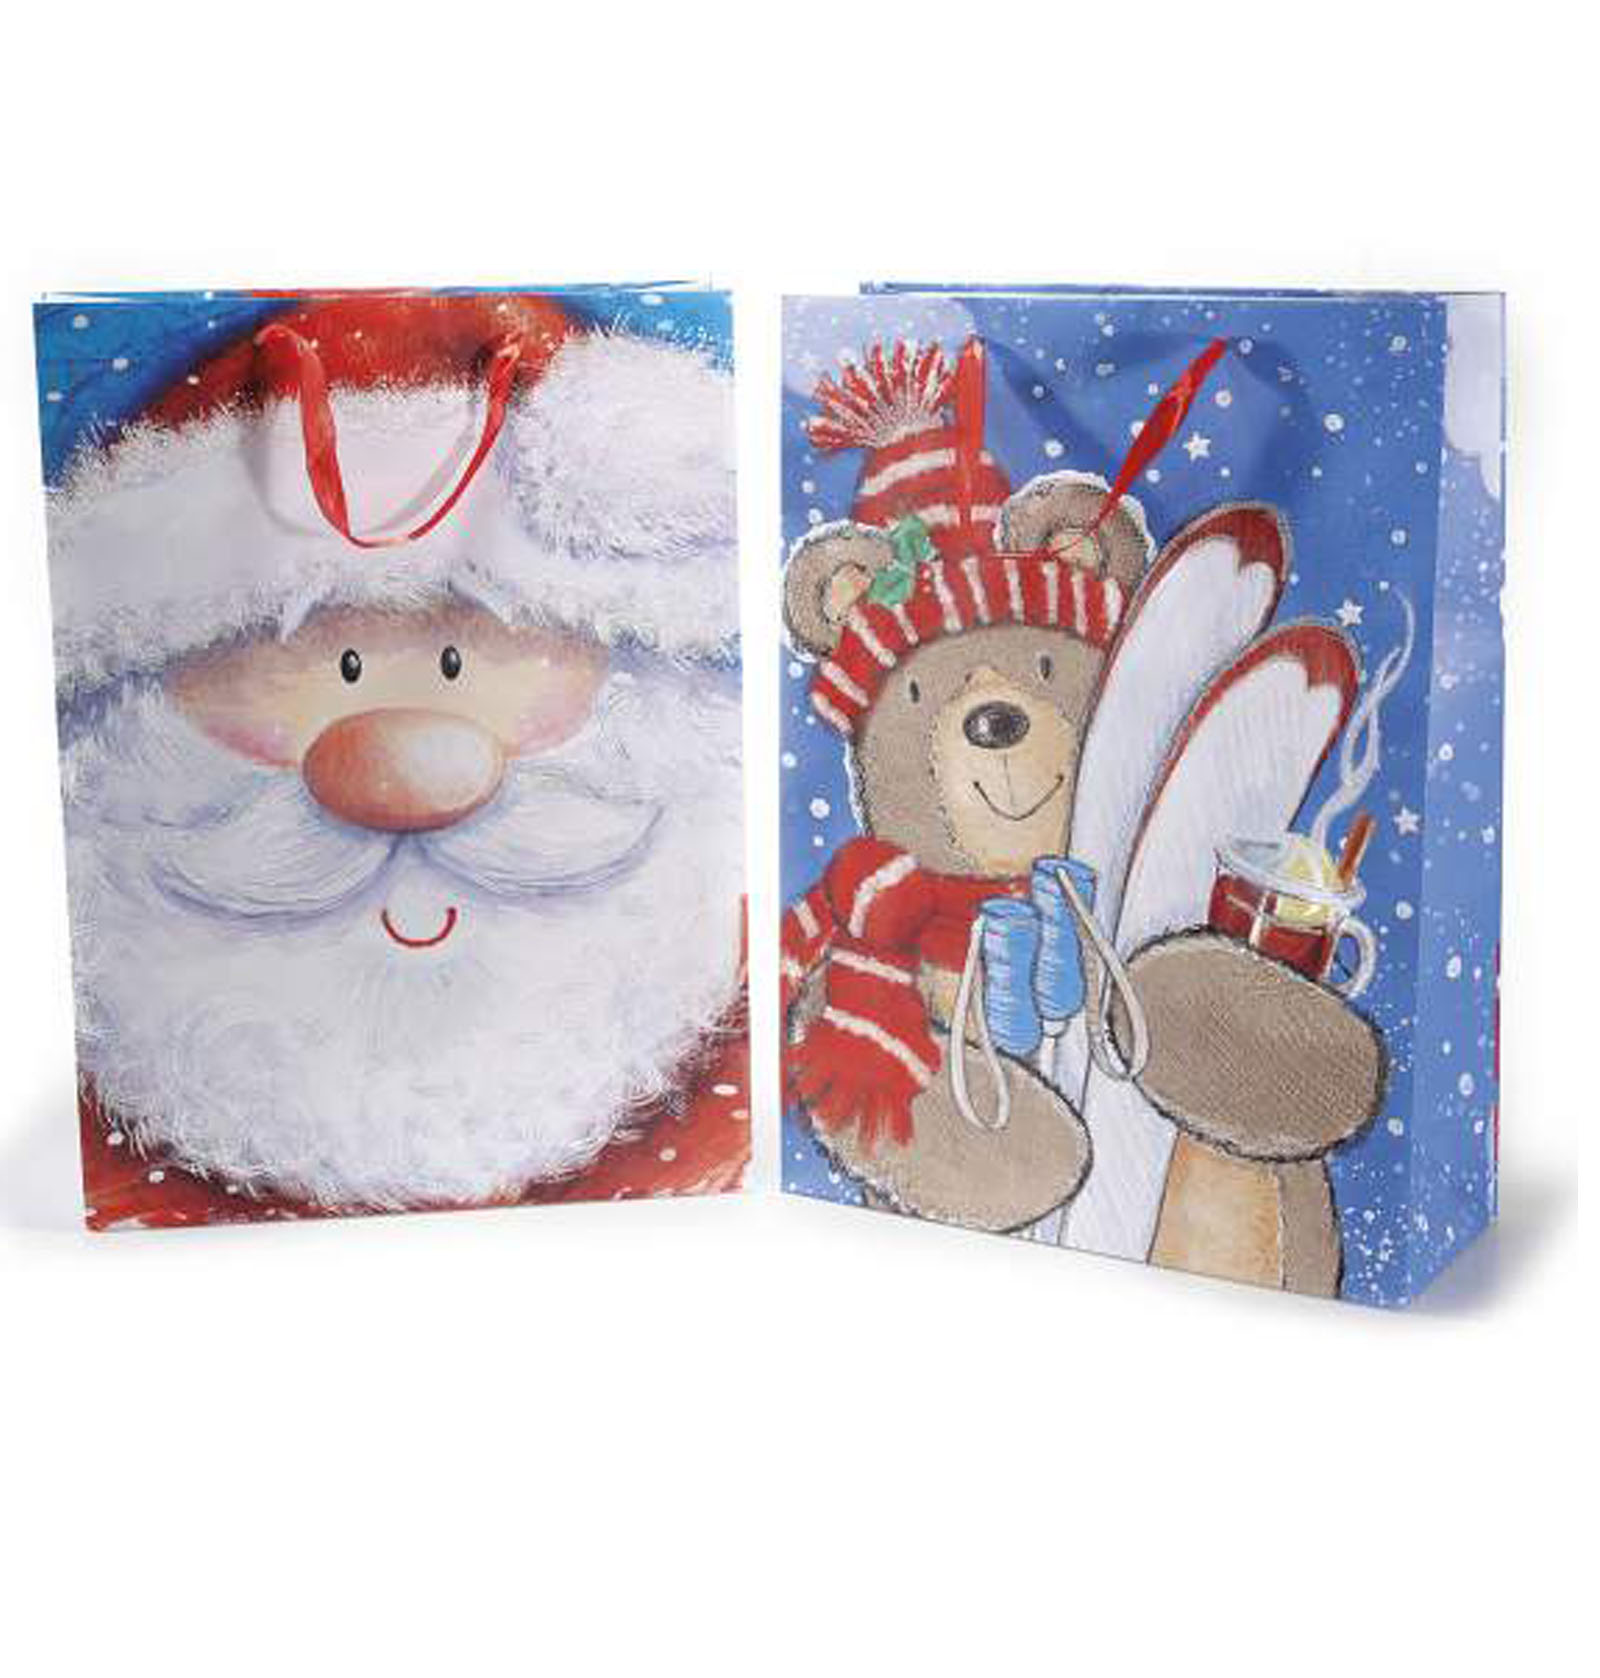 18Pz. Buste sacchetti da regalo natalizi in carta colorata con glitter: cm 33x13x45 H (c/manici55)